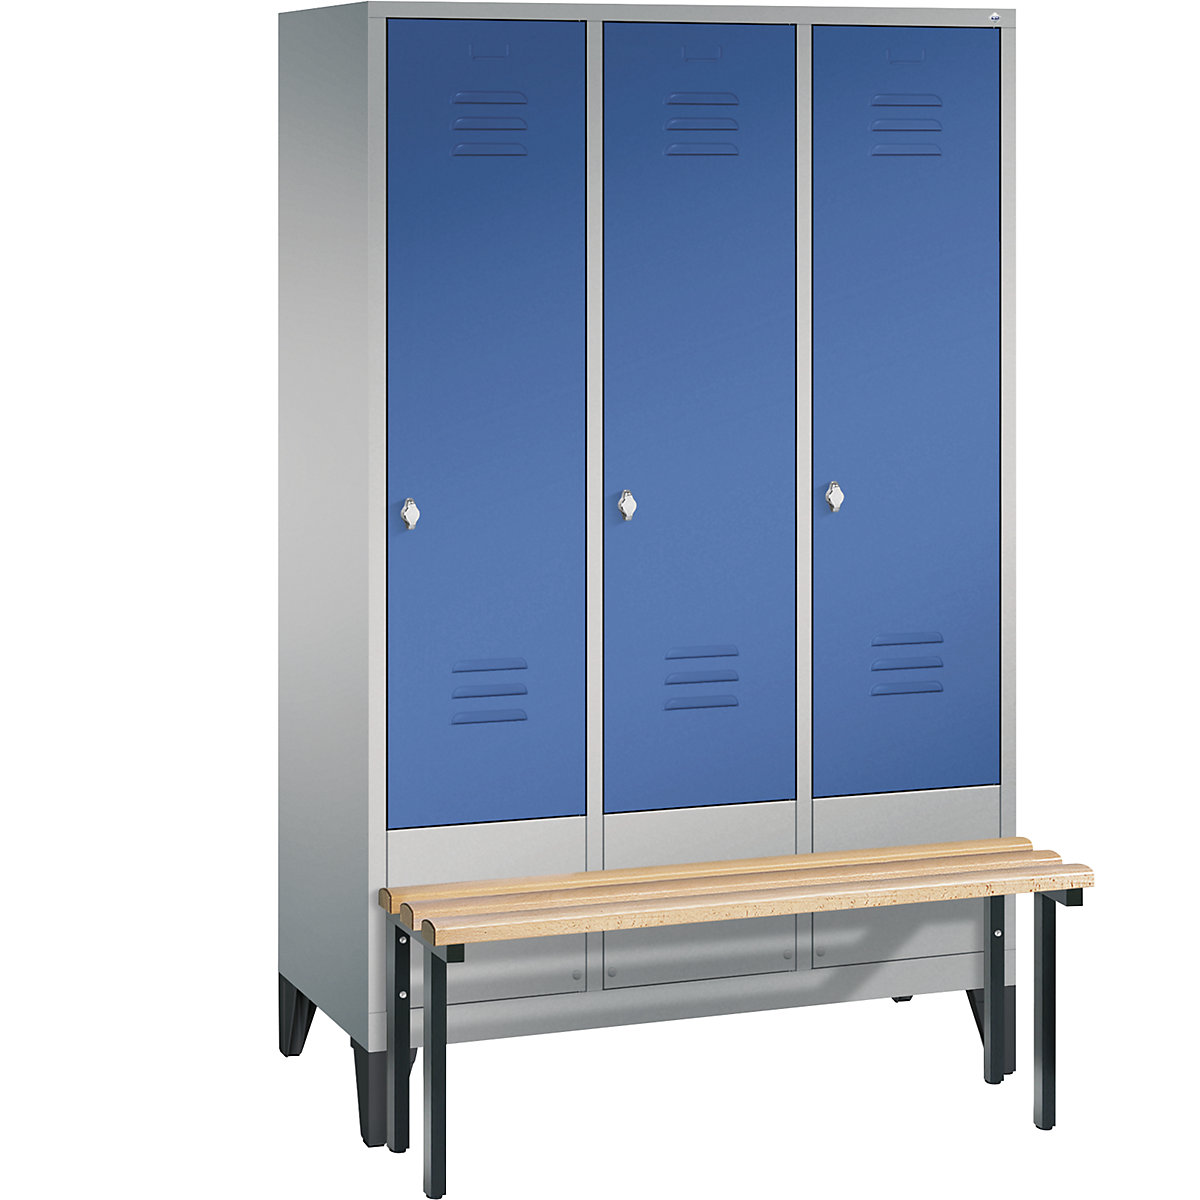 Garderobna omara CLASSIC s klopjo – C+P, 3 predelki, širina 400 mm/predelek, aluminijasto bele / encijan modre barve-10